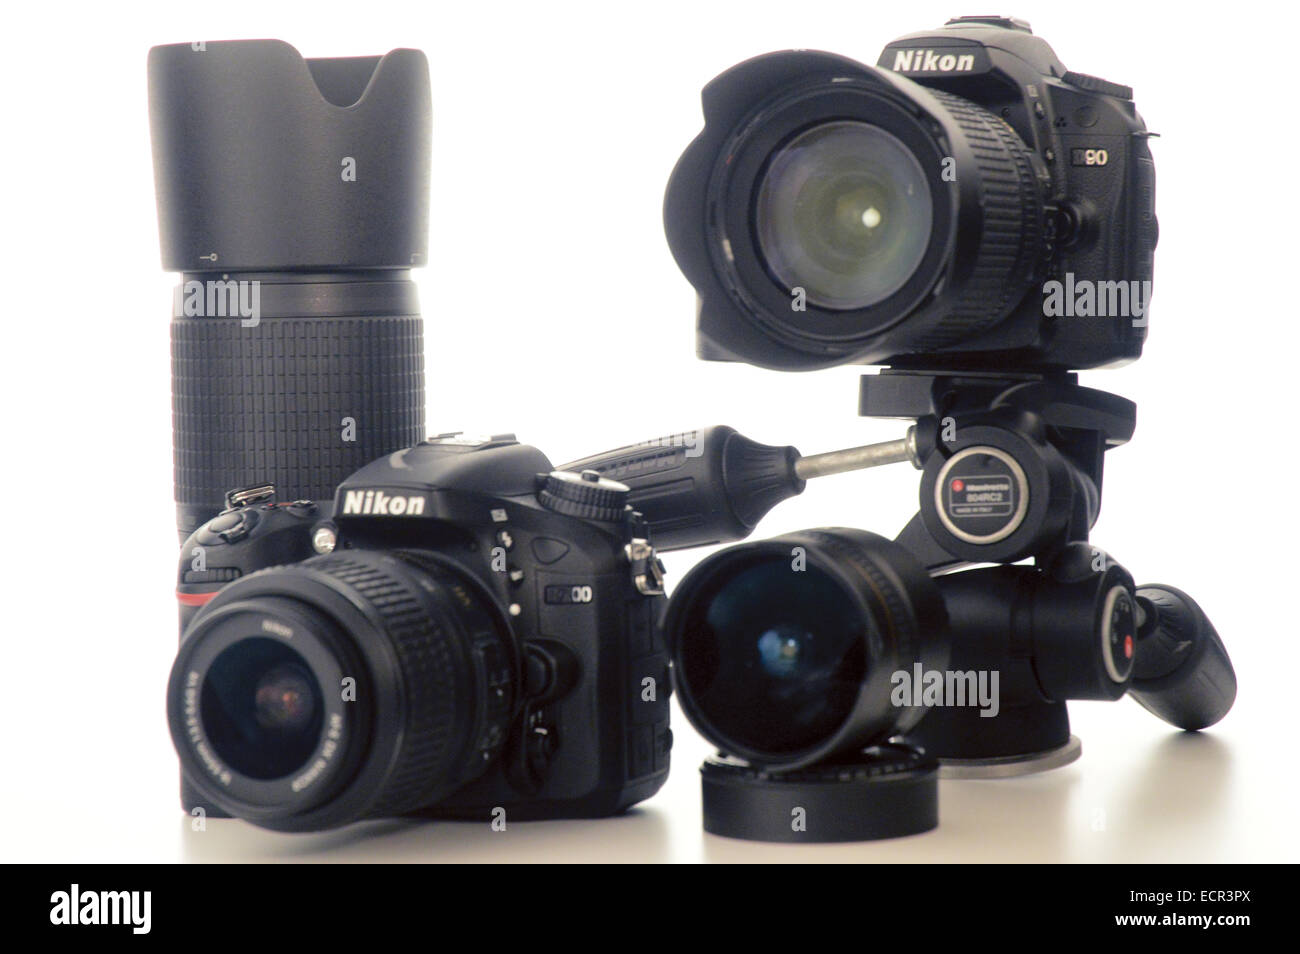 Cameras Nikon D90, Nikon d7000, lenses on white background Stock Photo